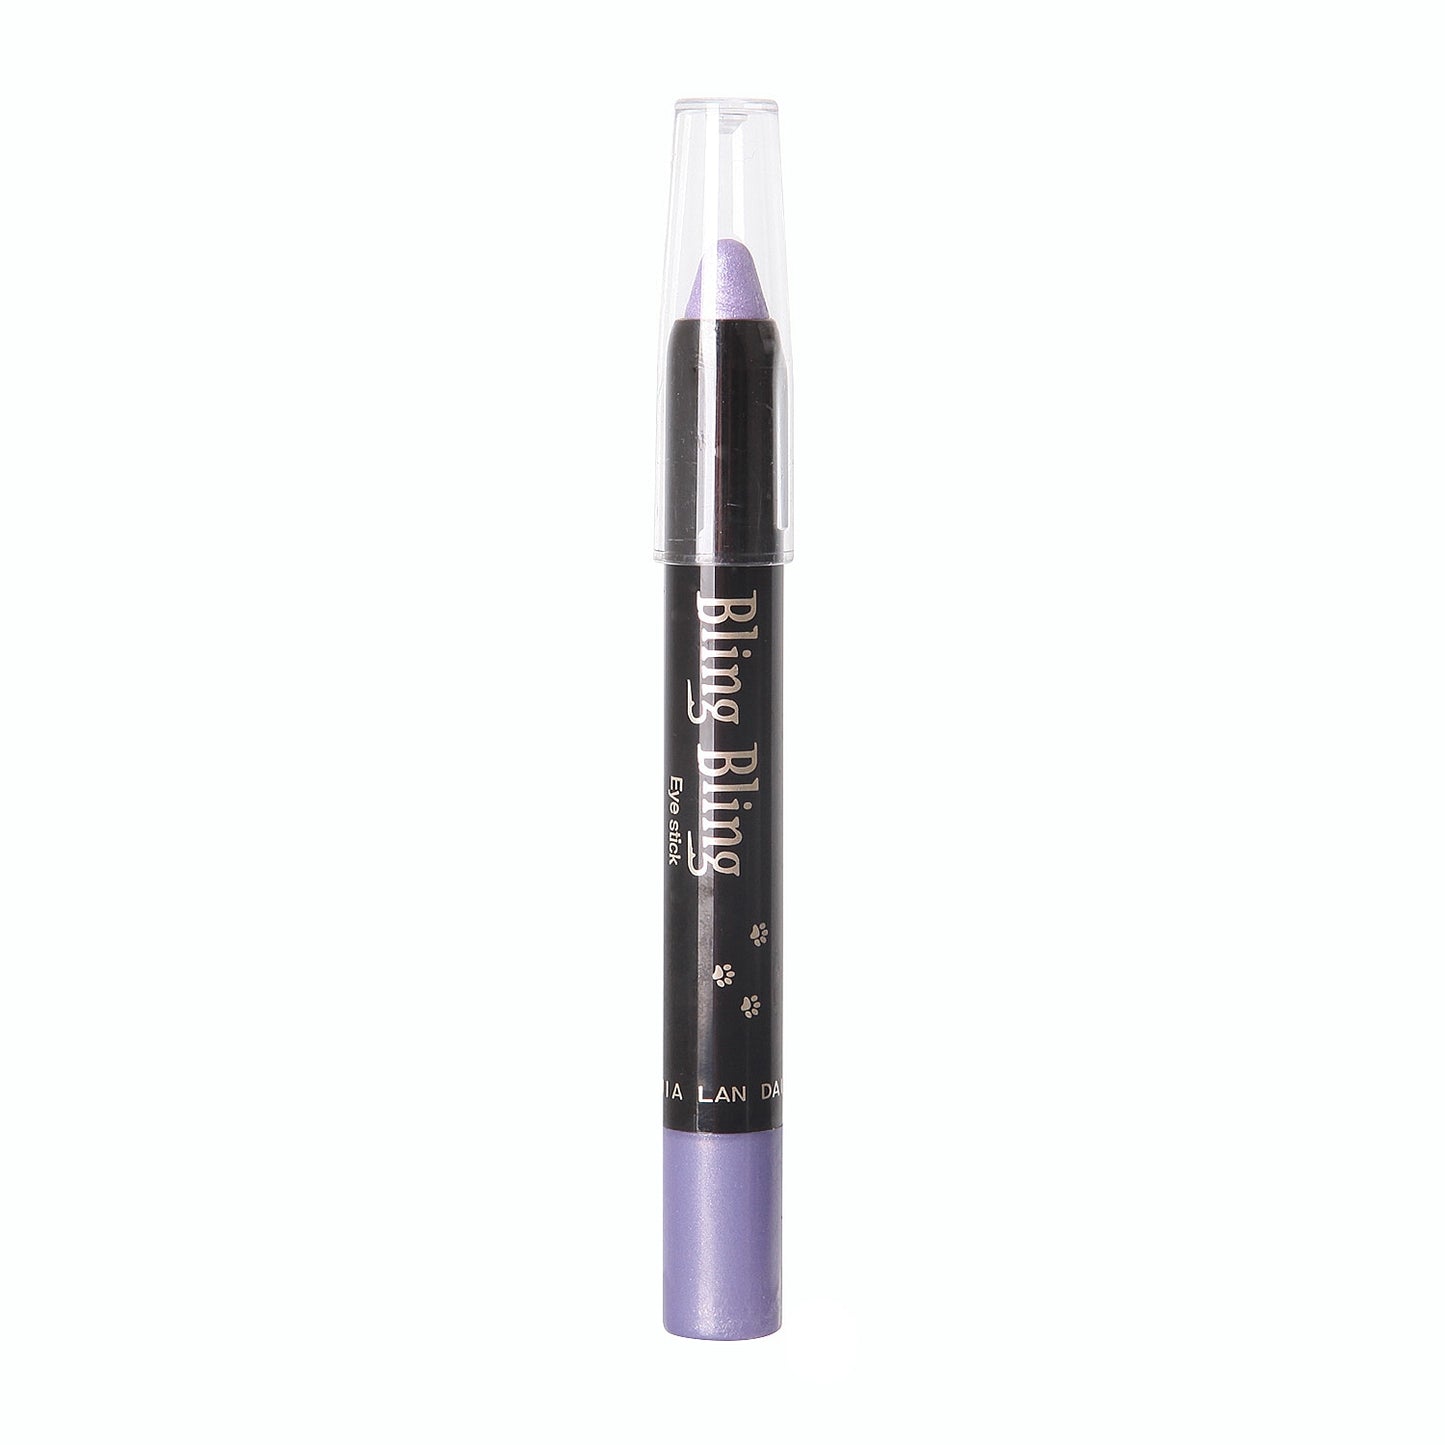 15 Color Pearlescent Eyeshadow Pencils